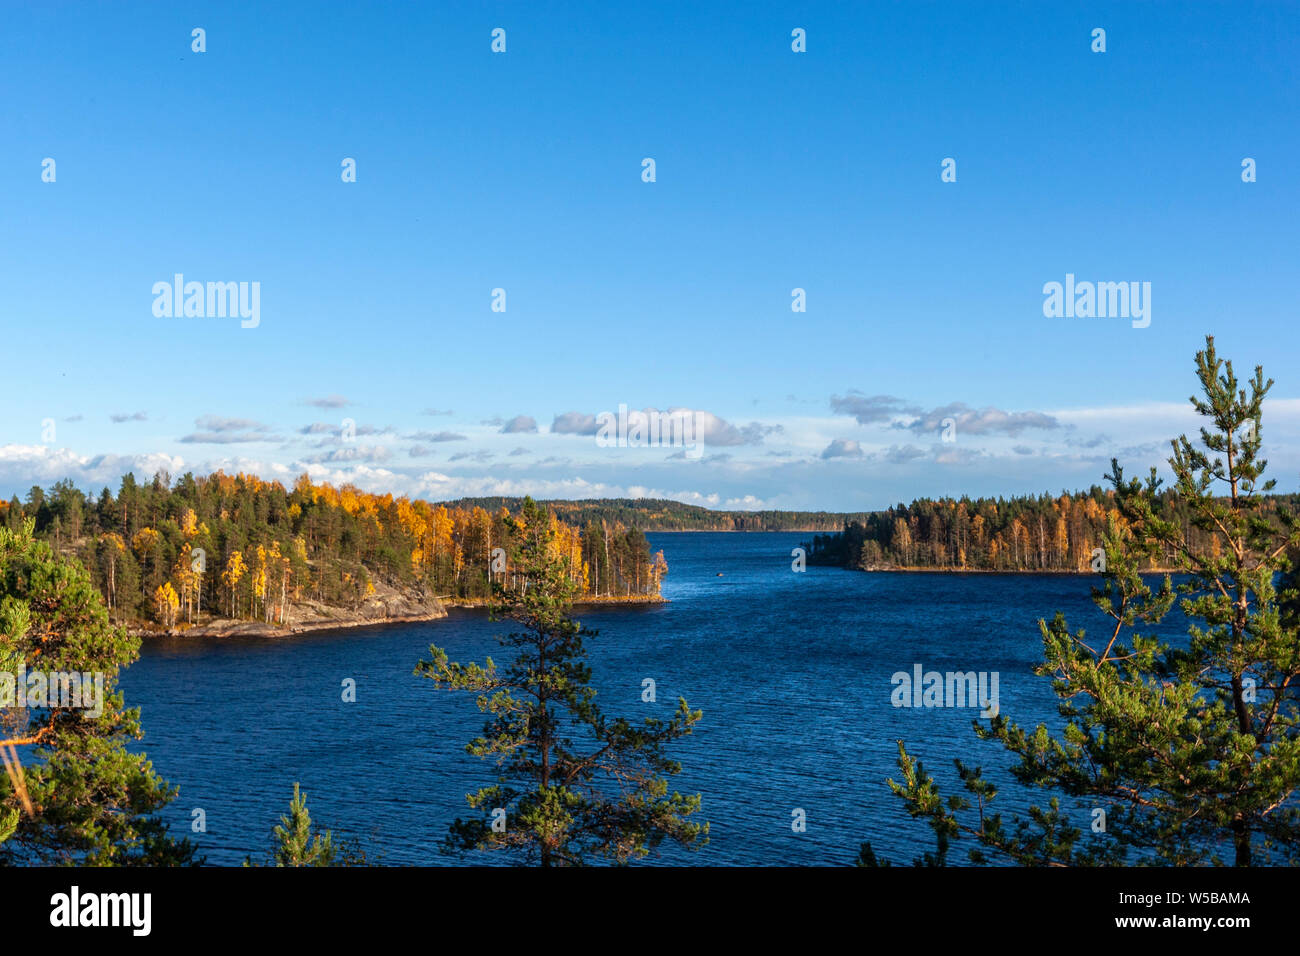 Linnunpaanselka lake in autumn in Finnish Lakeland, Järvi-Suomi, Finland Stock Photo